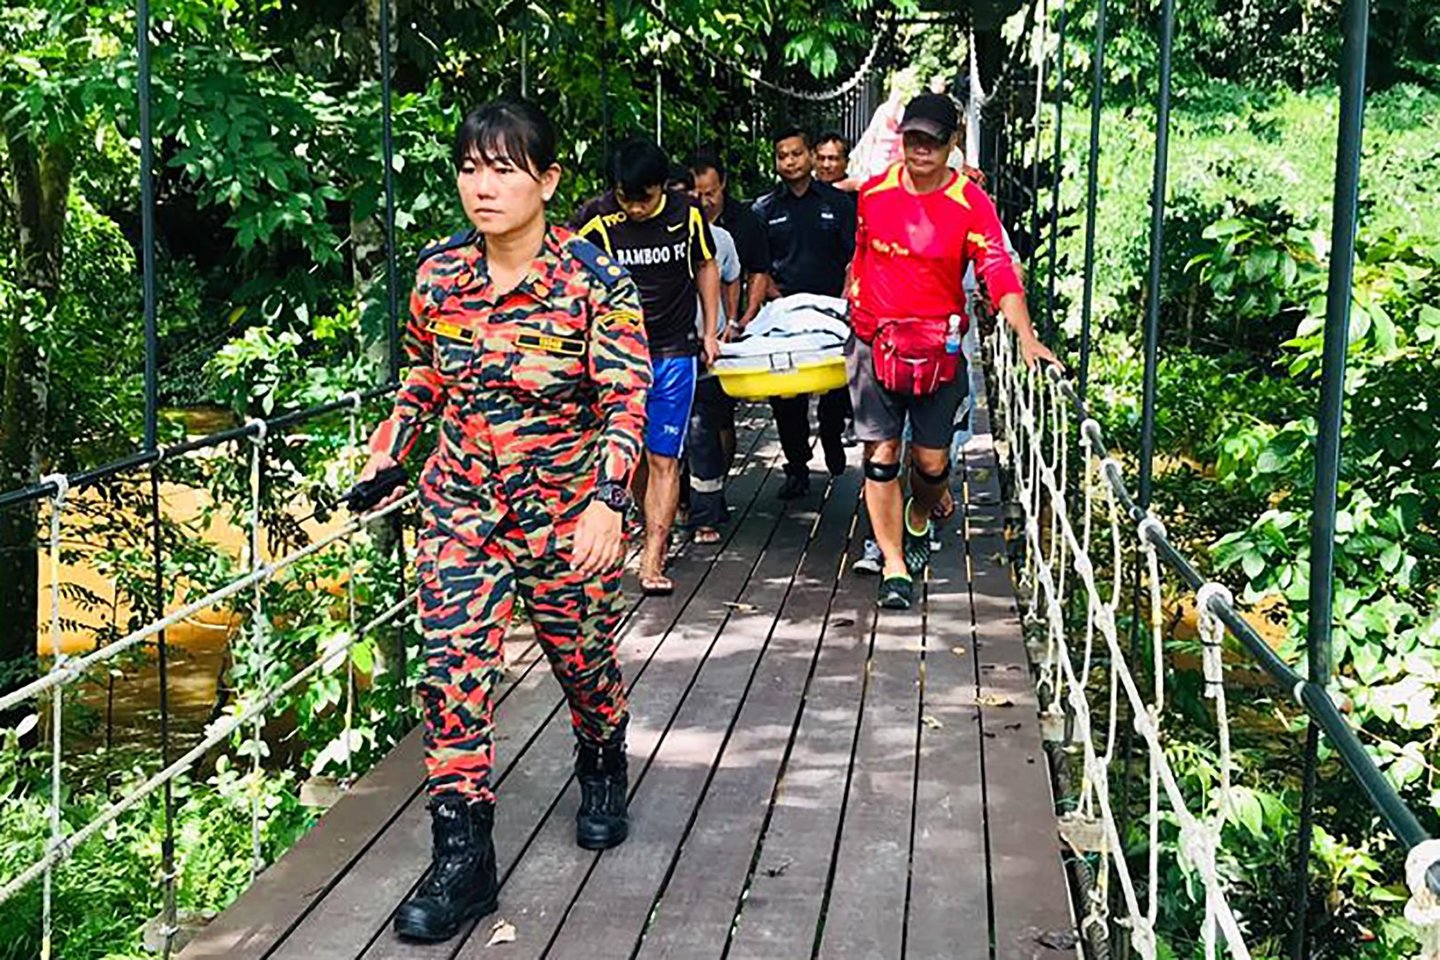  Malaizijai priklausančioje Borneo salos dalyje vienas olandų turistas žuvo per staigų potvynį viename populiariame urve kalnuotame Mulu nacionaliniame parke, šeštadienį pranešė vienas pareigūnas.<br> AFP/Scanpix nuotr.